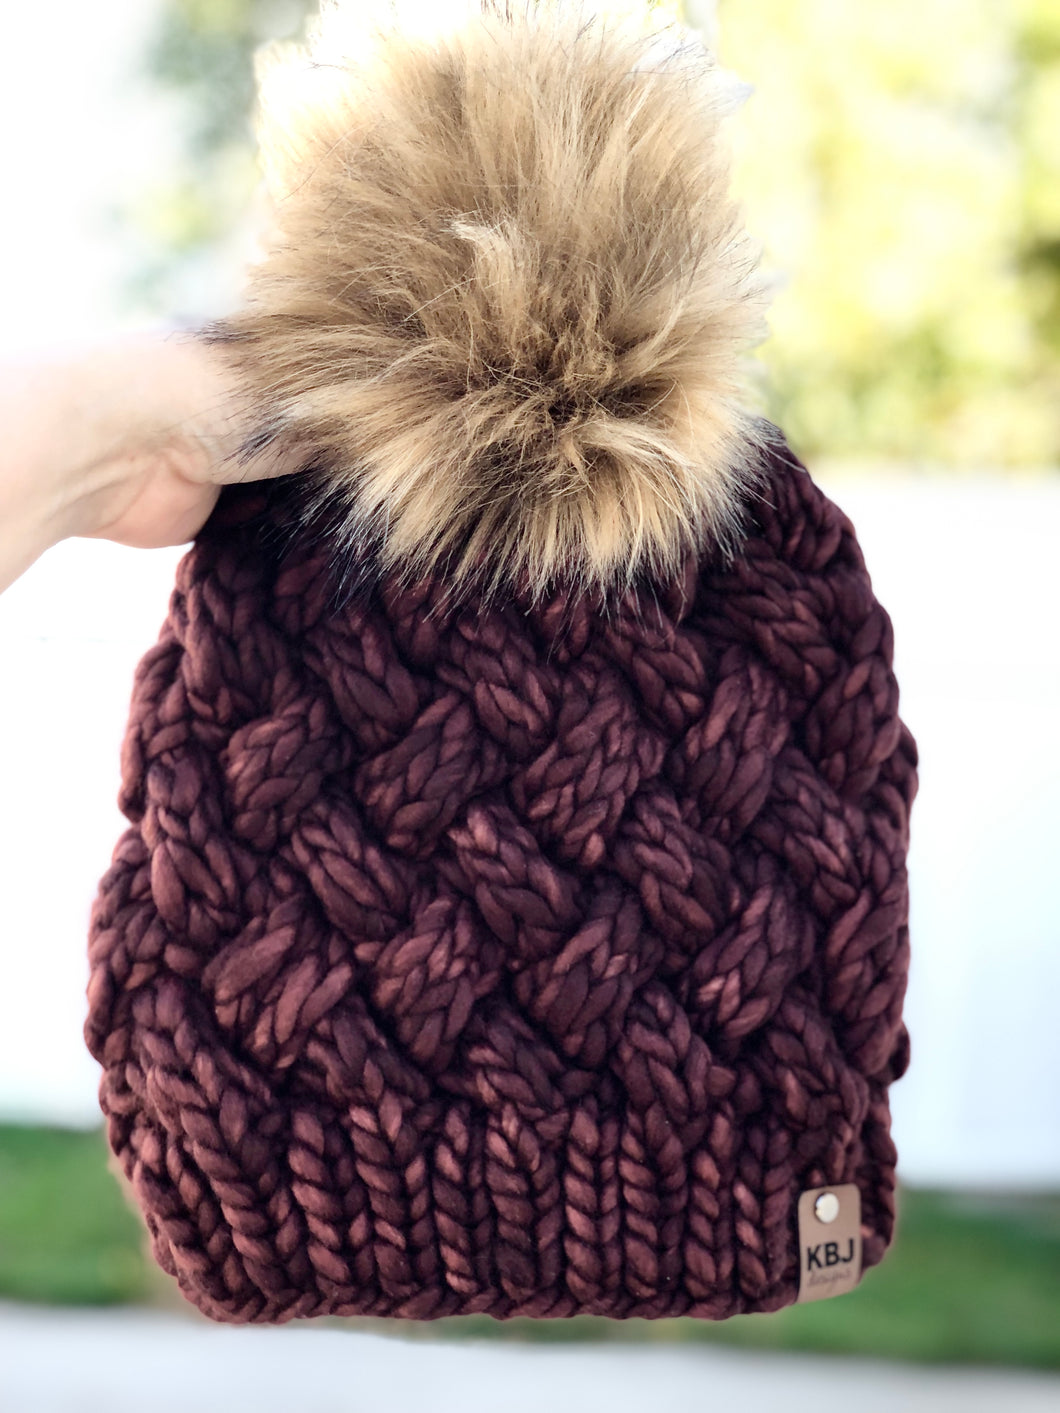 Yukon Slouch LUXURY Handmade 100% Merino Wool Knit Beanie in Malabrigo Rasta with detachable faux fur pom pom - Ready To Ship